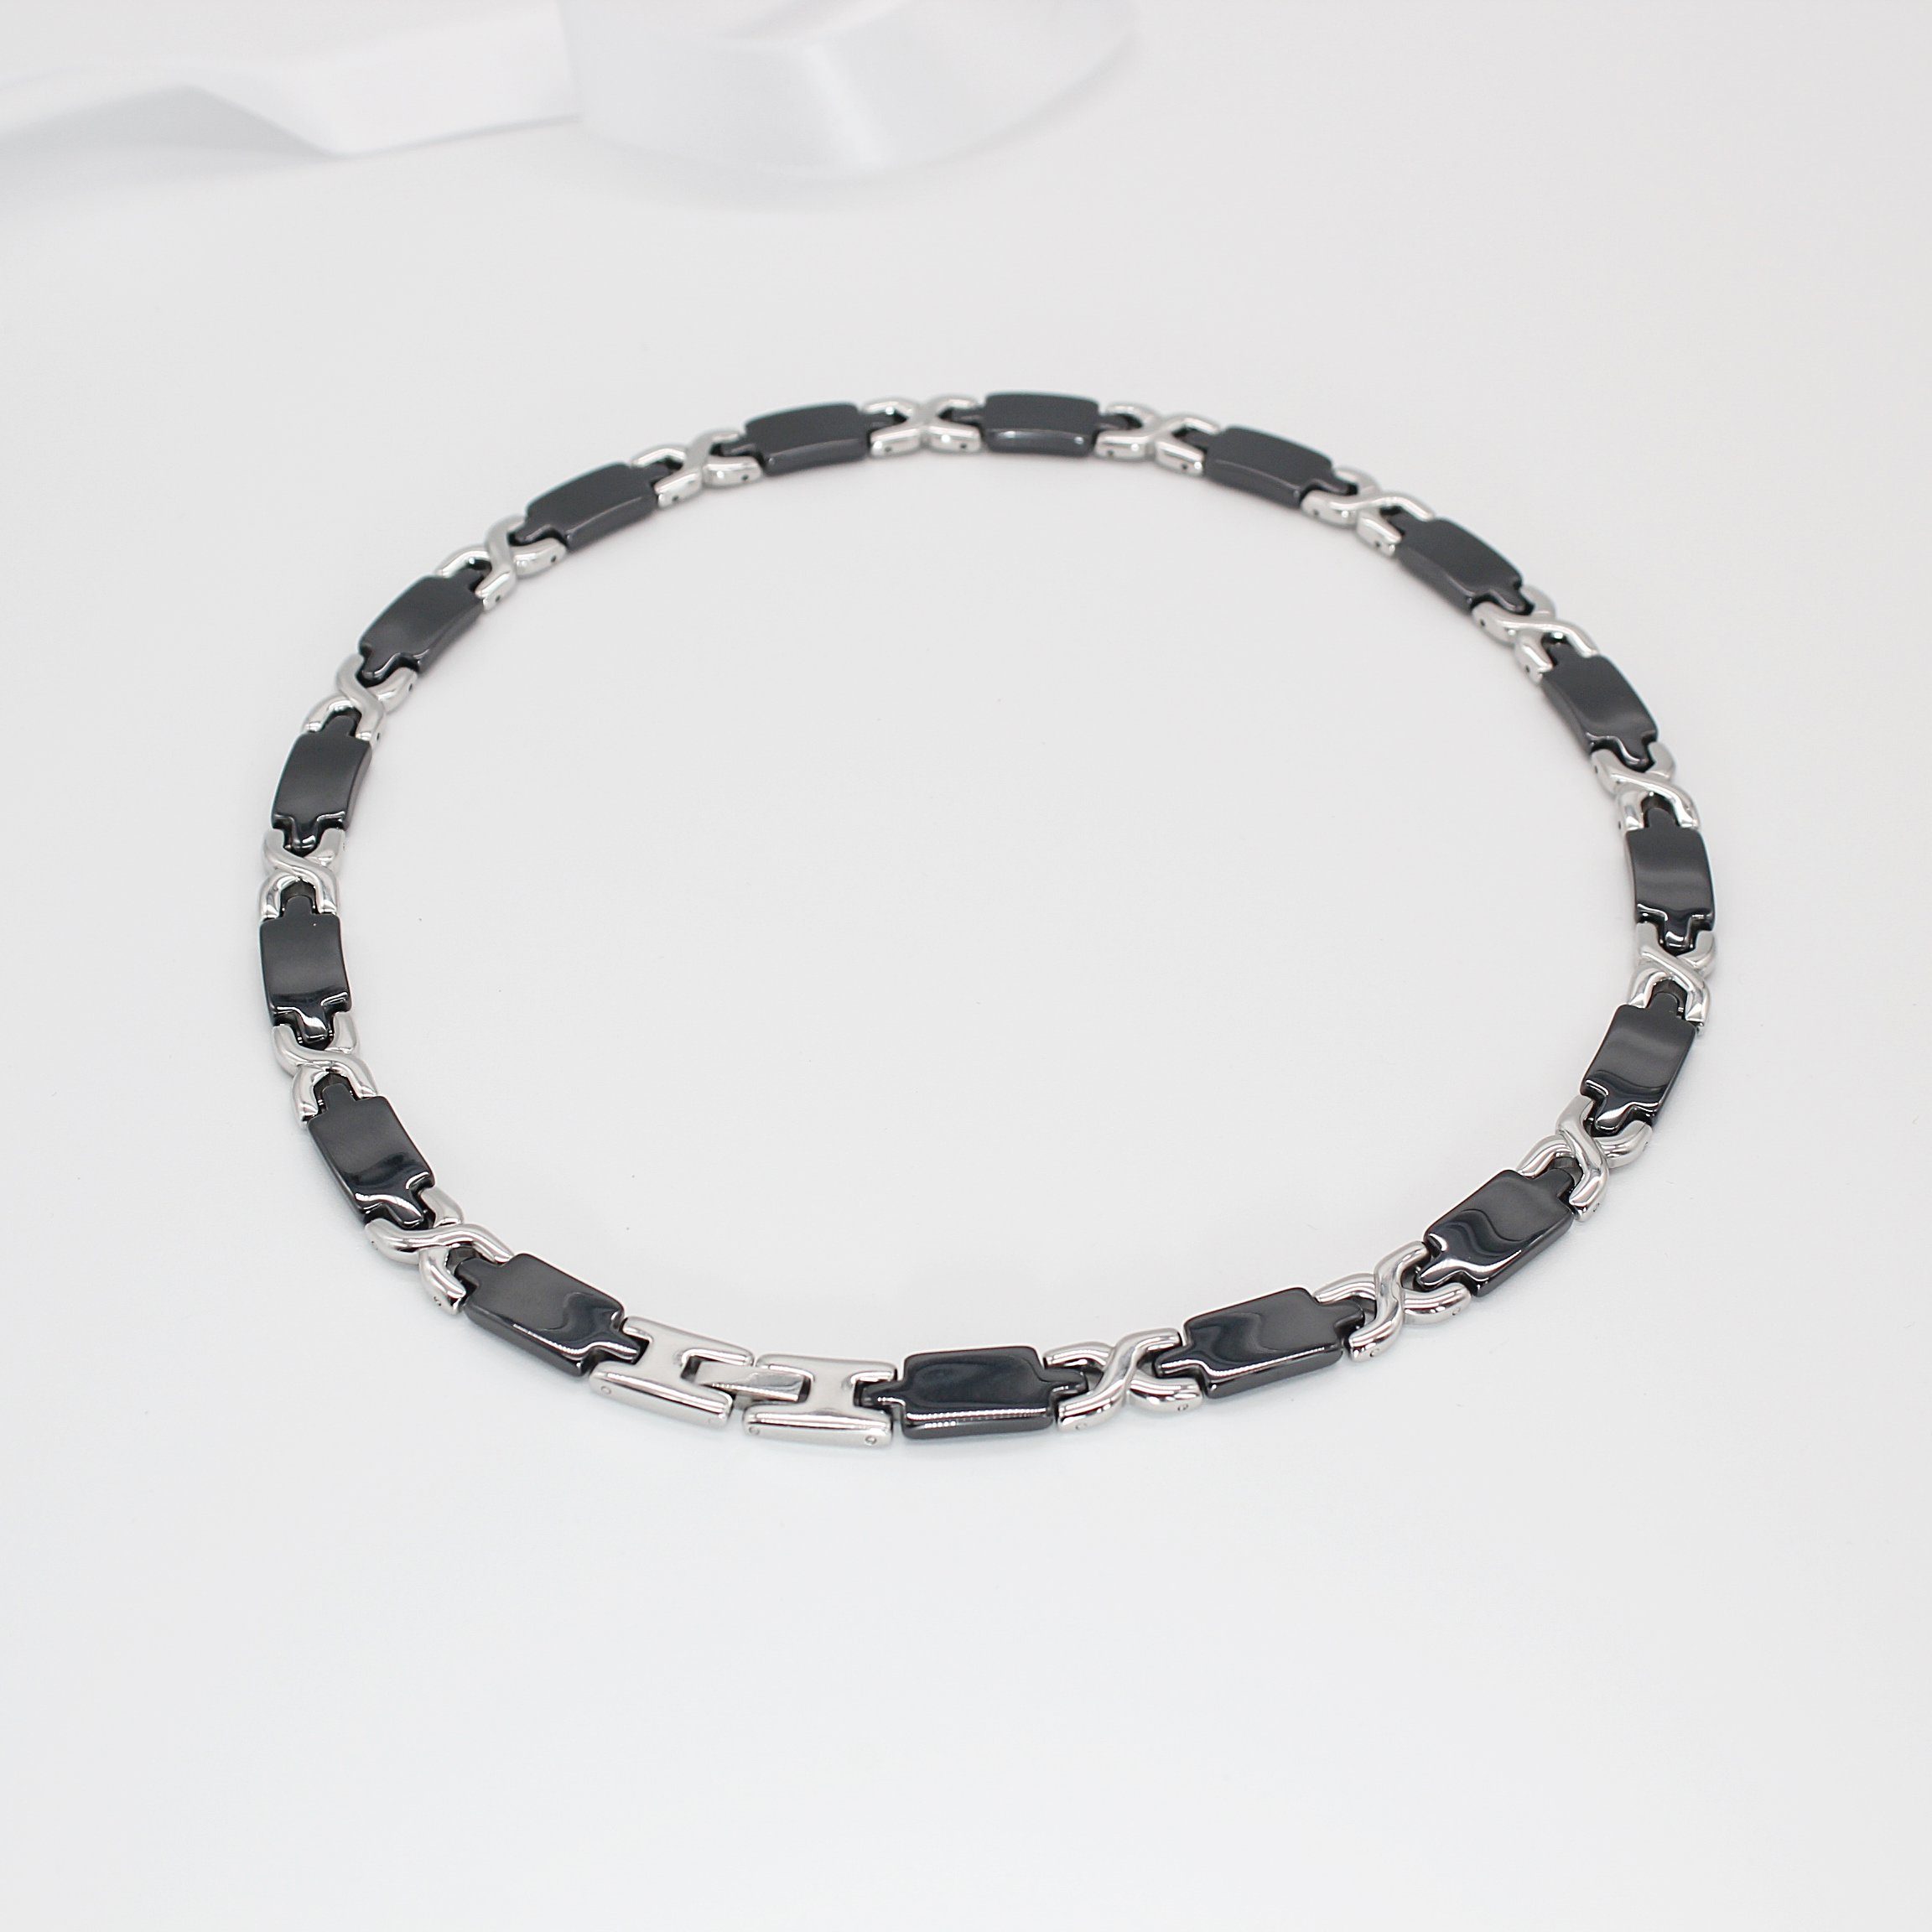 ELLAWIL Collier Halskette / Collier Damenkette Collierkette Gliederkette Kette (aus schwarzer Keramik mit silberfarbenen Edelstahl, Kettenlänge 48 cm, Breite 6 mm), inklusive Geschenkschachtel